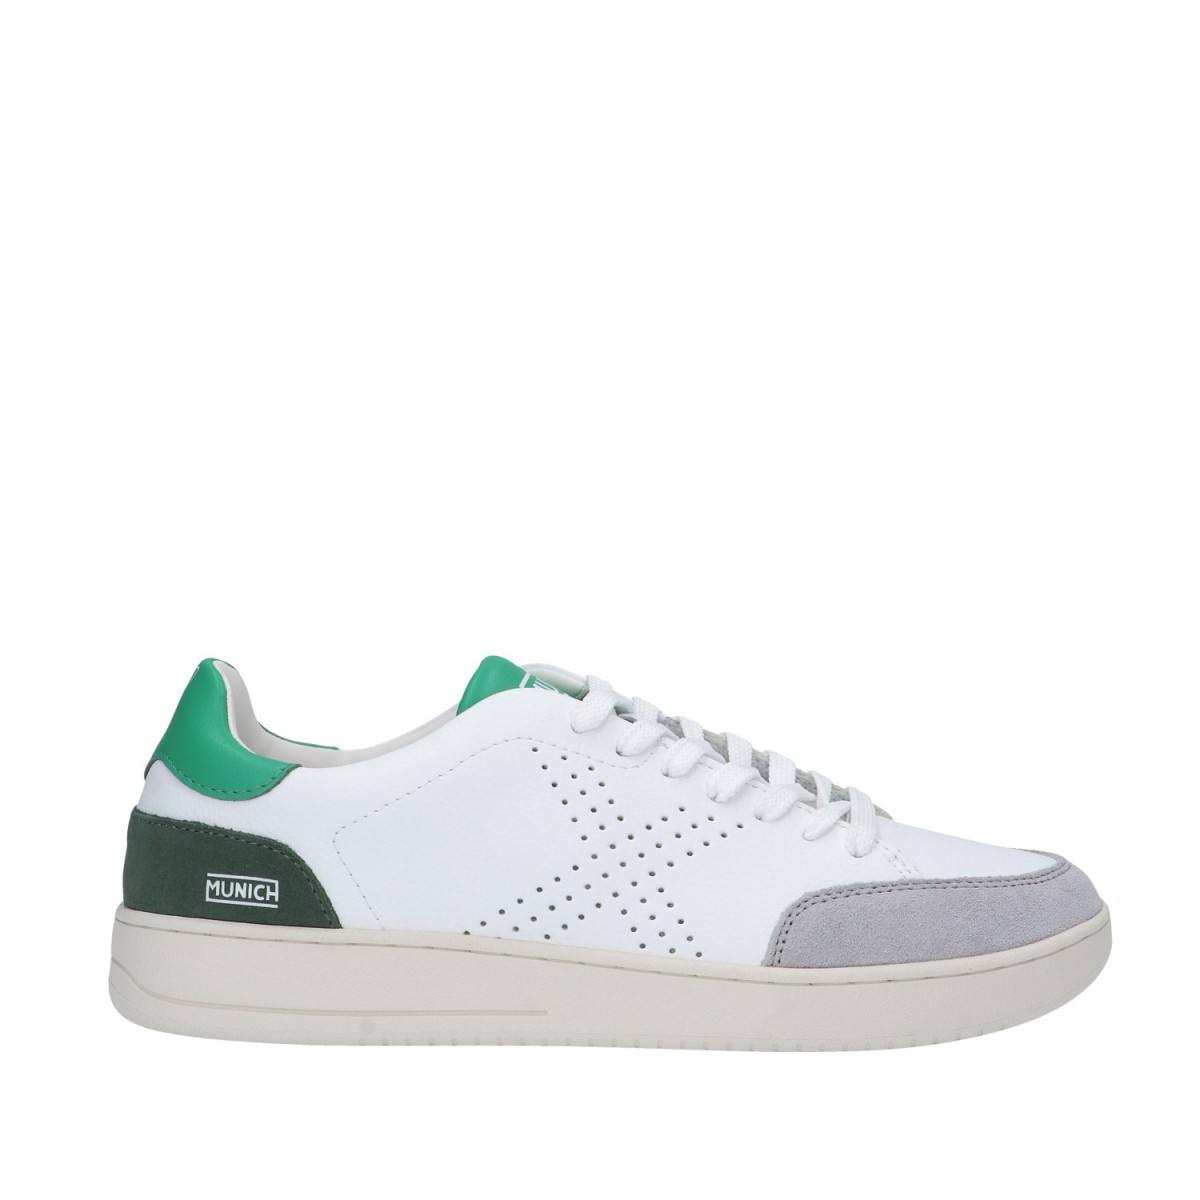 Munich Sneaker Bianco/verde...